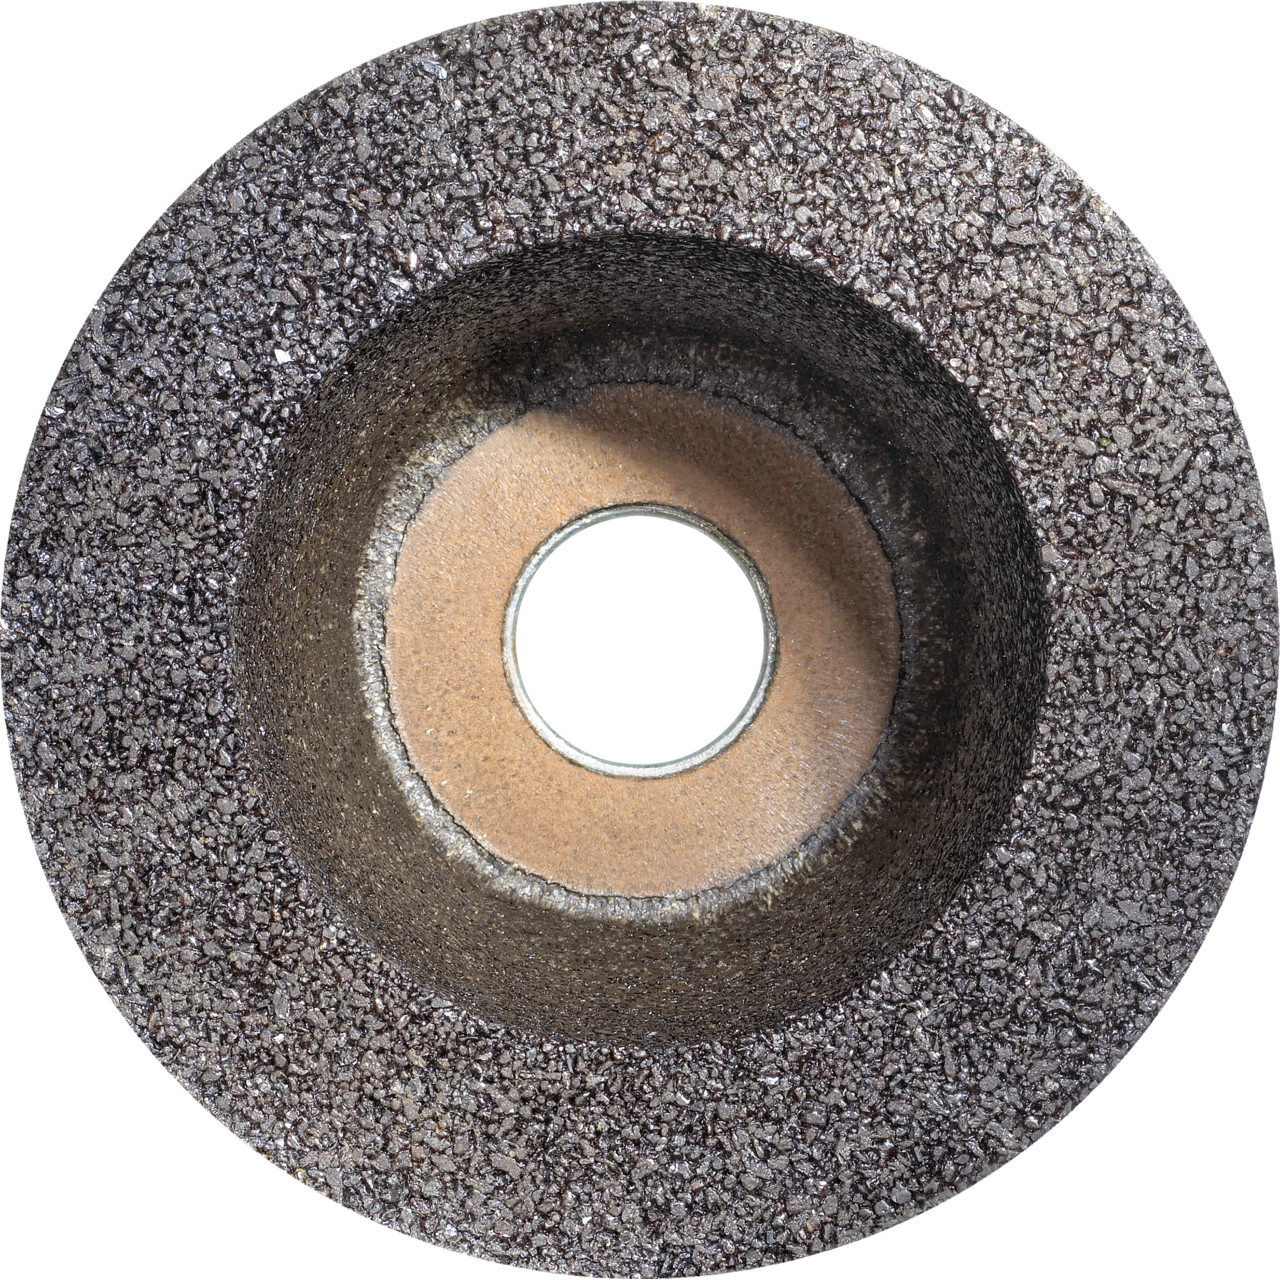 Taza de resina sintética TYROLIT D/JxDxH 110/90x55x22,23 Para piedra, forma: rueda de taza 11BT, Art. 317307